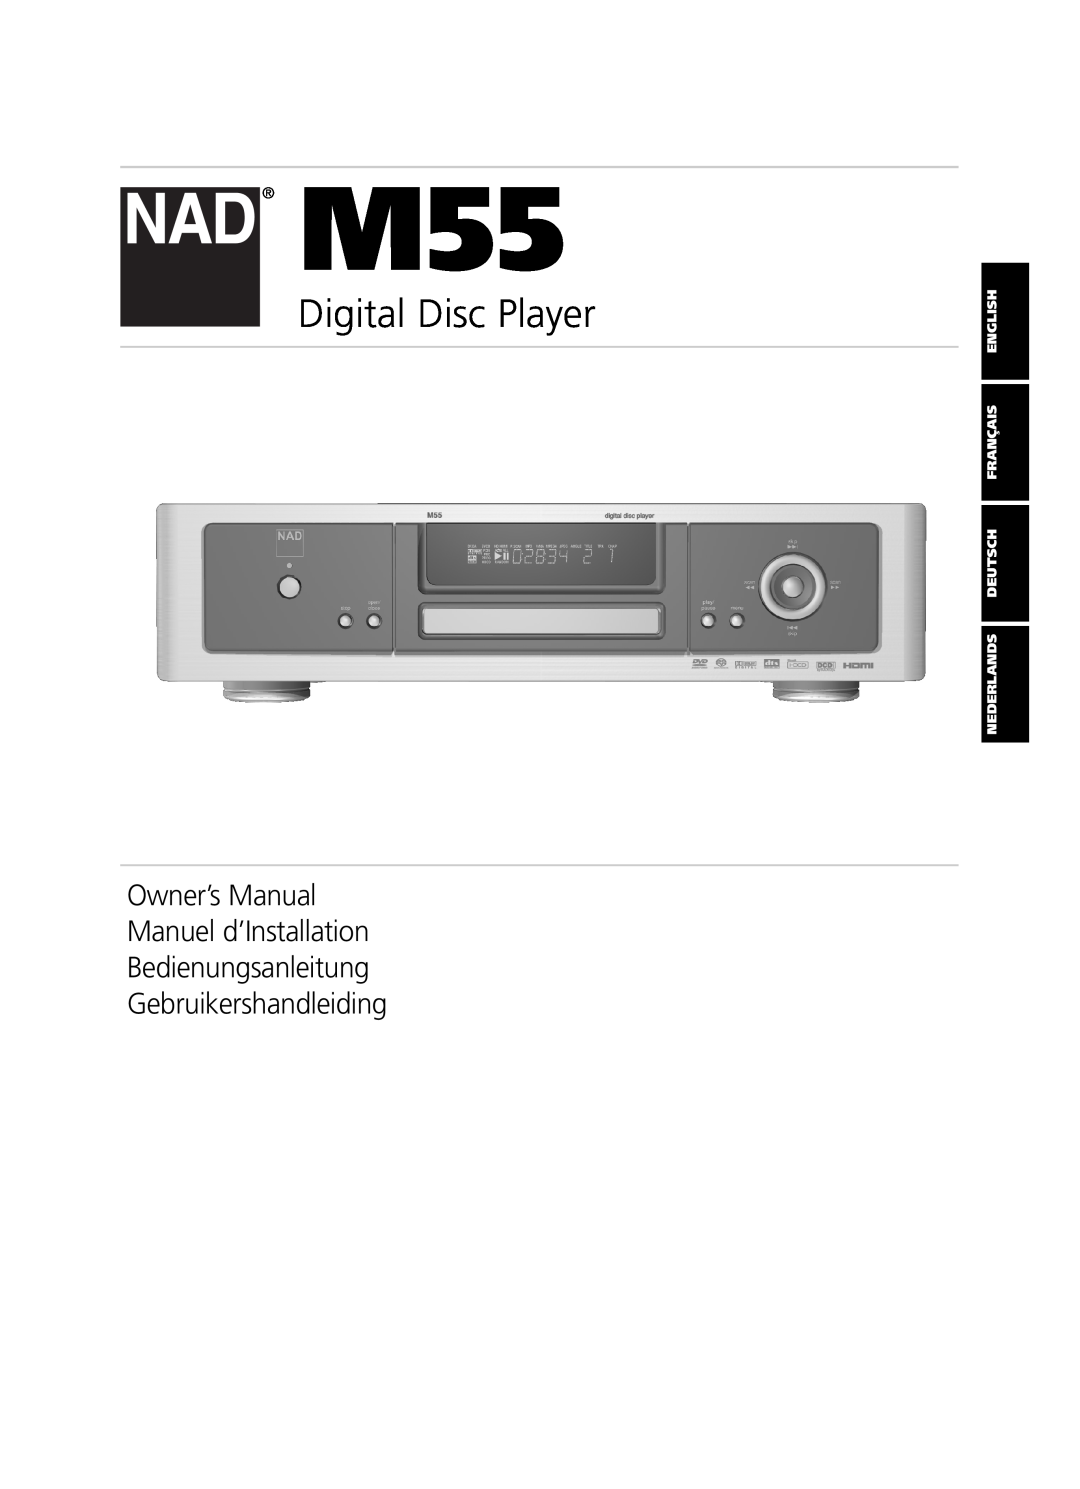 NAD M55 owner manual Owner’s Manual Manuel d’Installation Bedienungsanleitung, Gebruikershandleiding, Digital Disc Player 